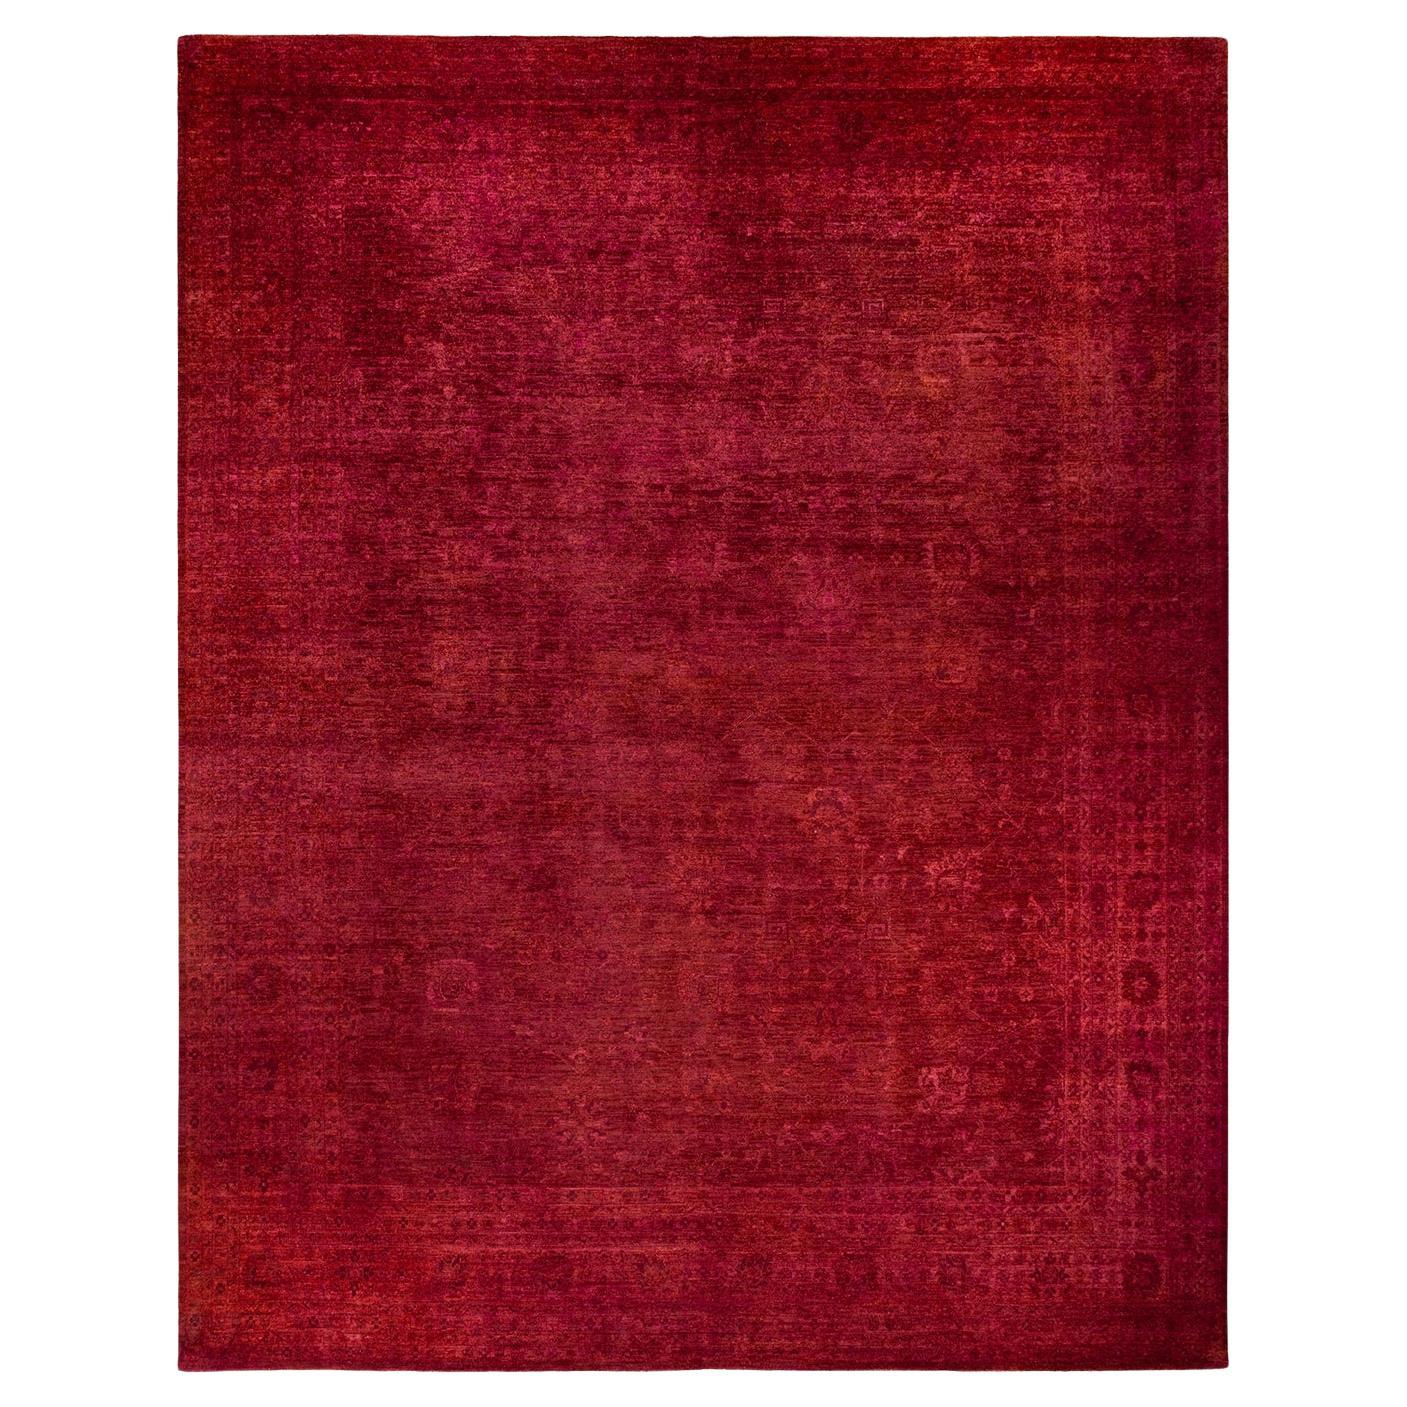 Tapis Contemporary en laine surteinte nouée à la main rose